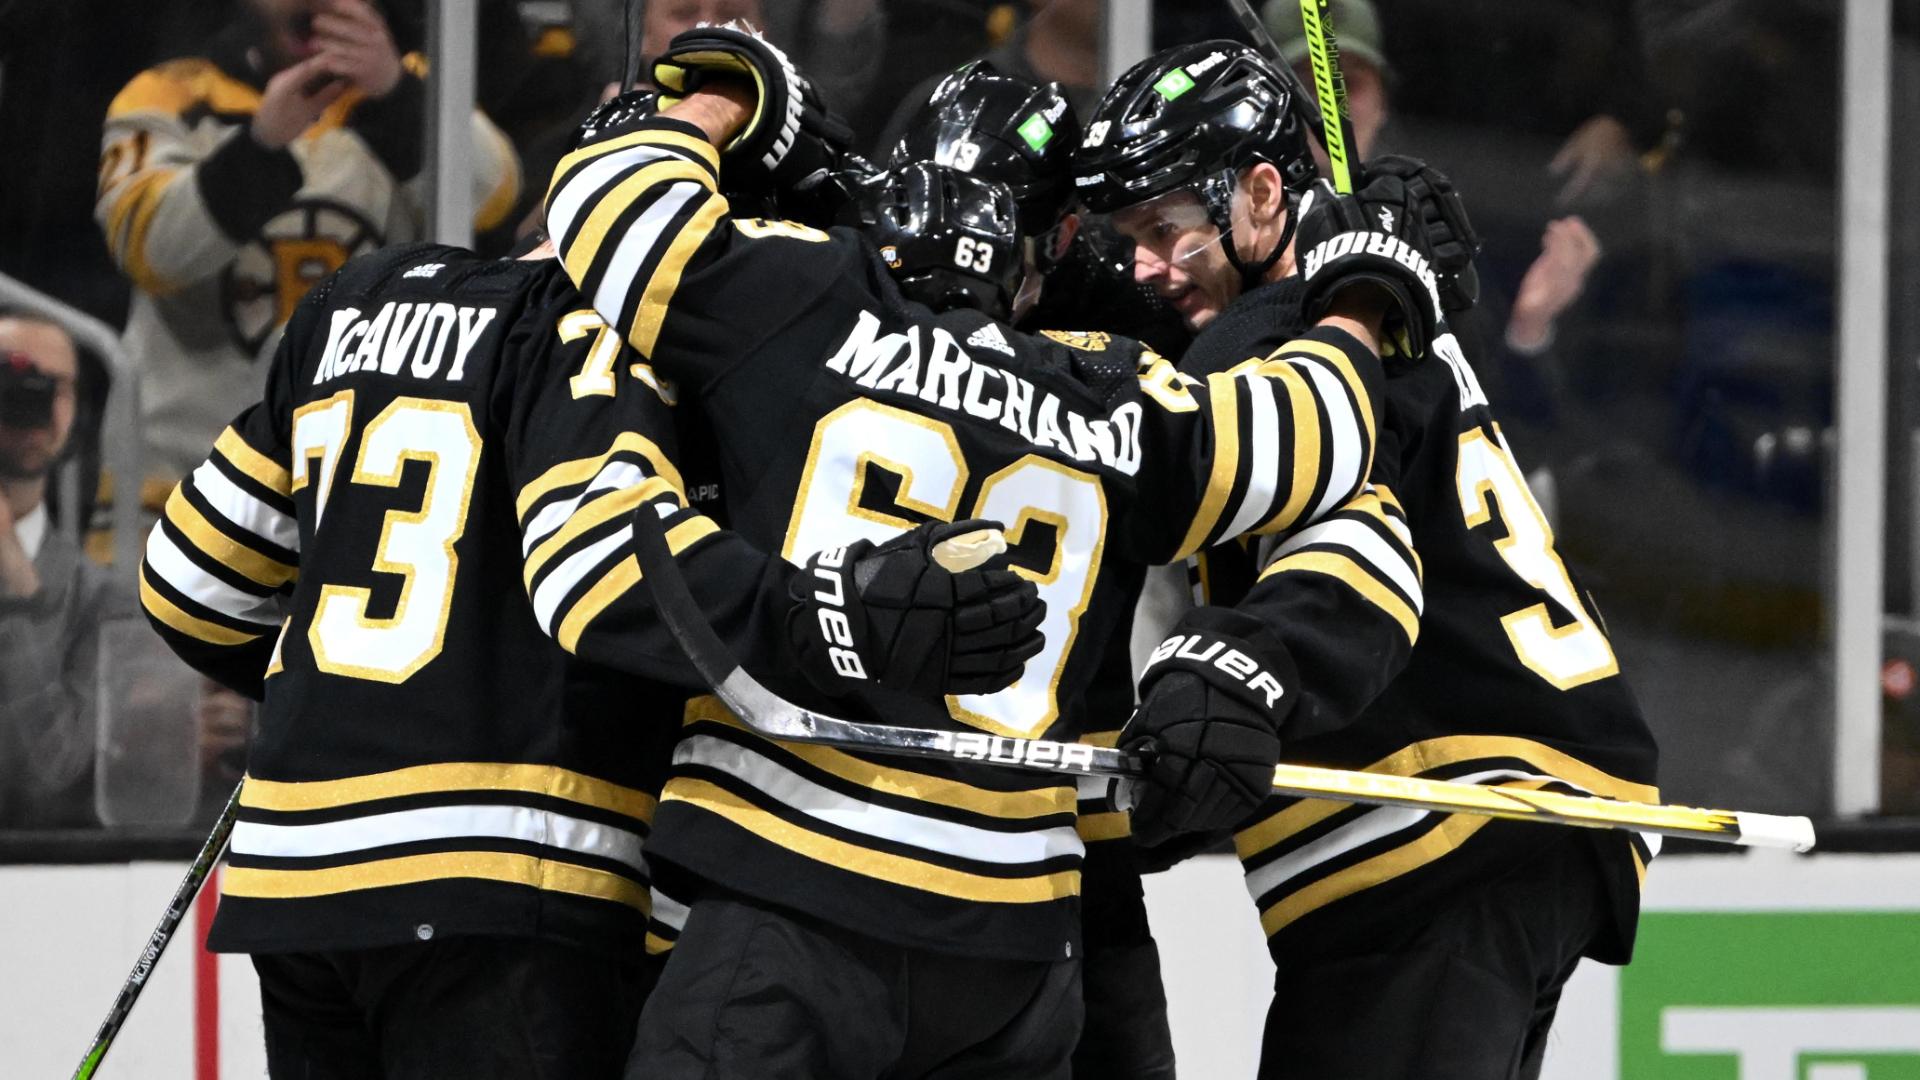 Jake DeBrusk scores again for Bruins